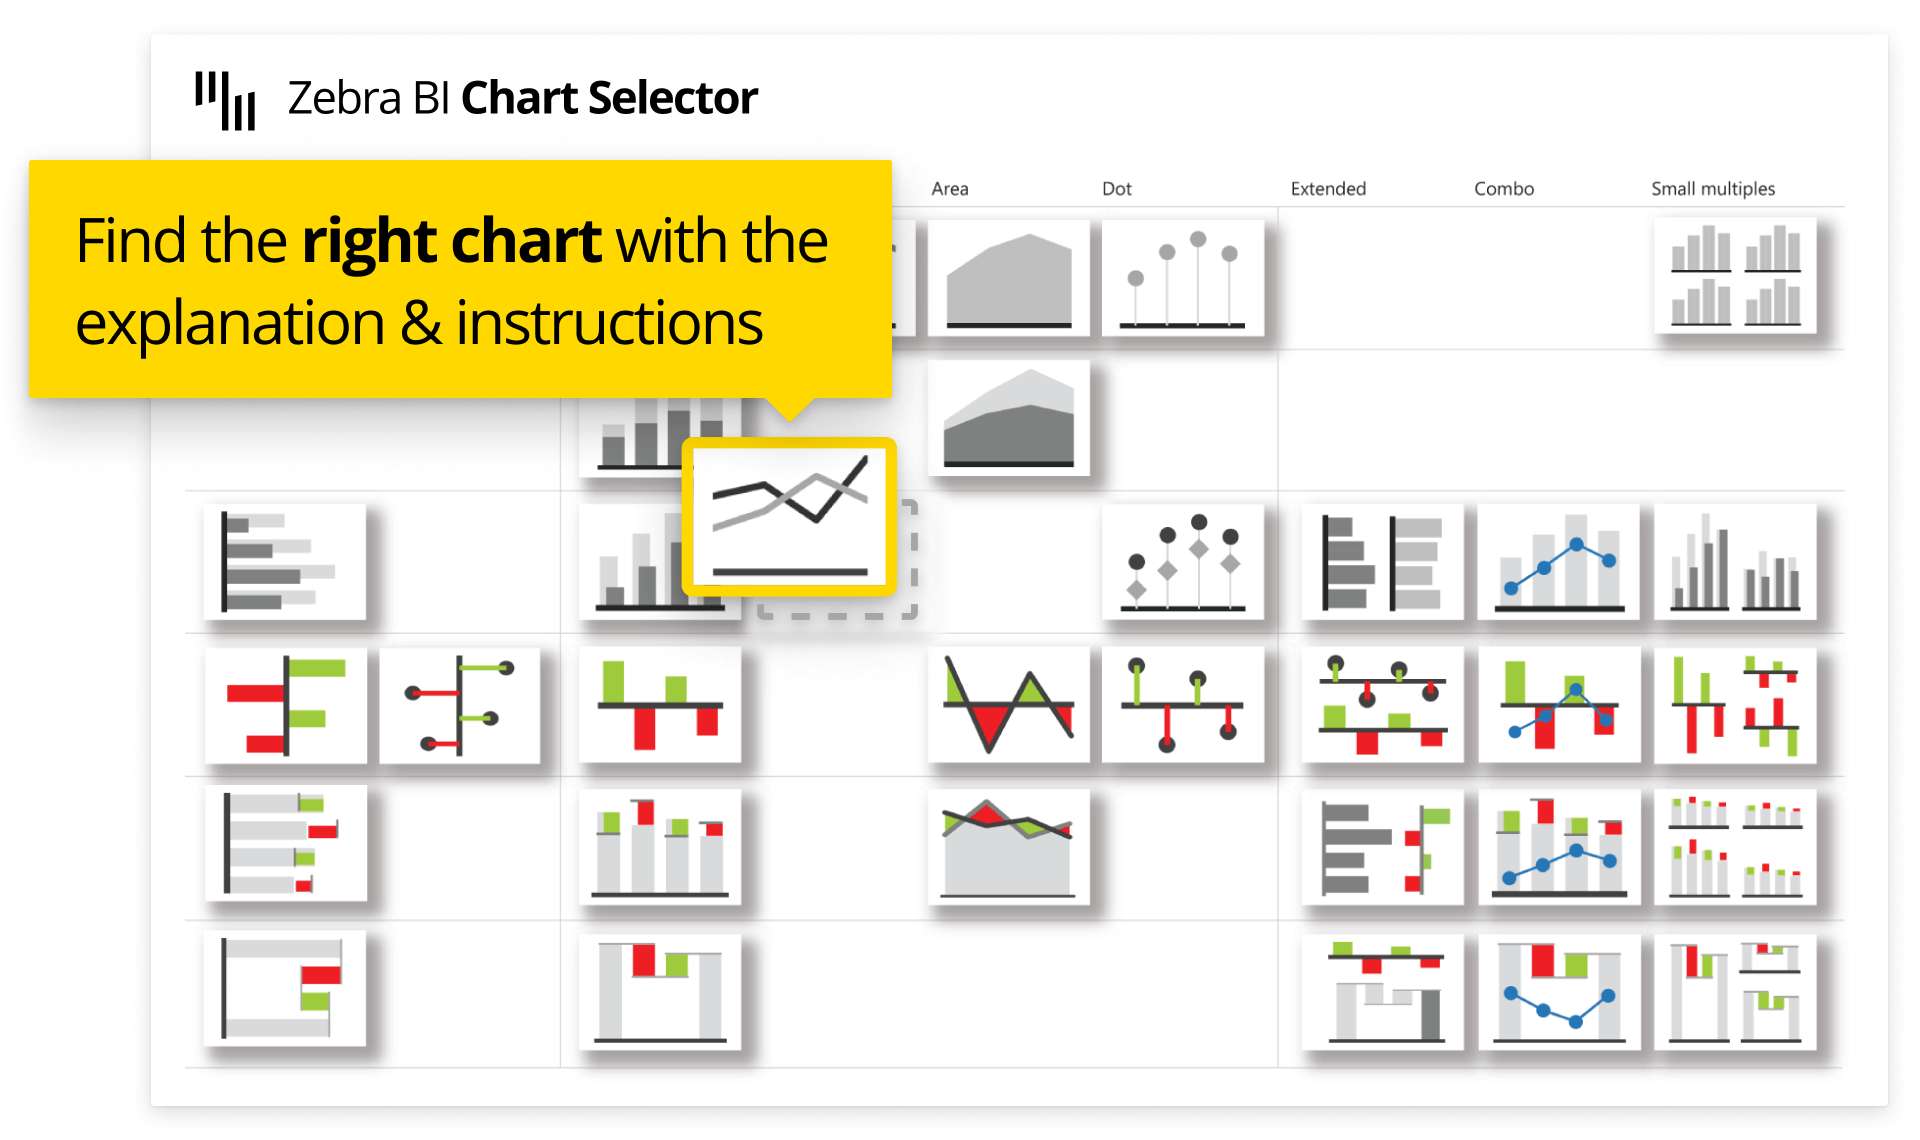 Zebra BI Chart Selector